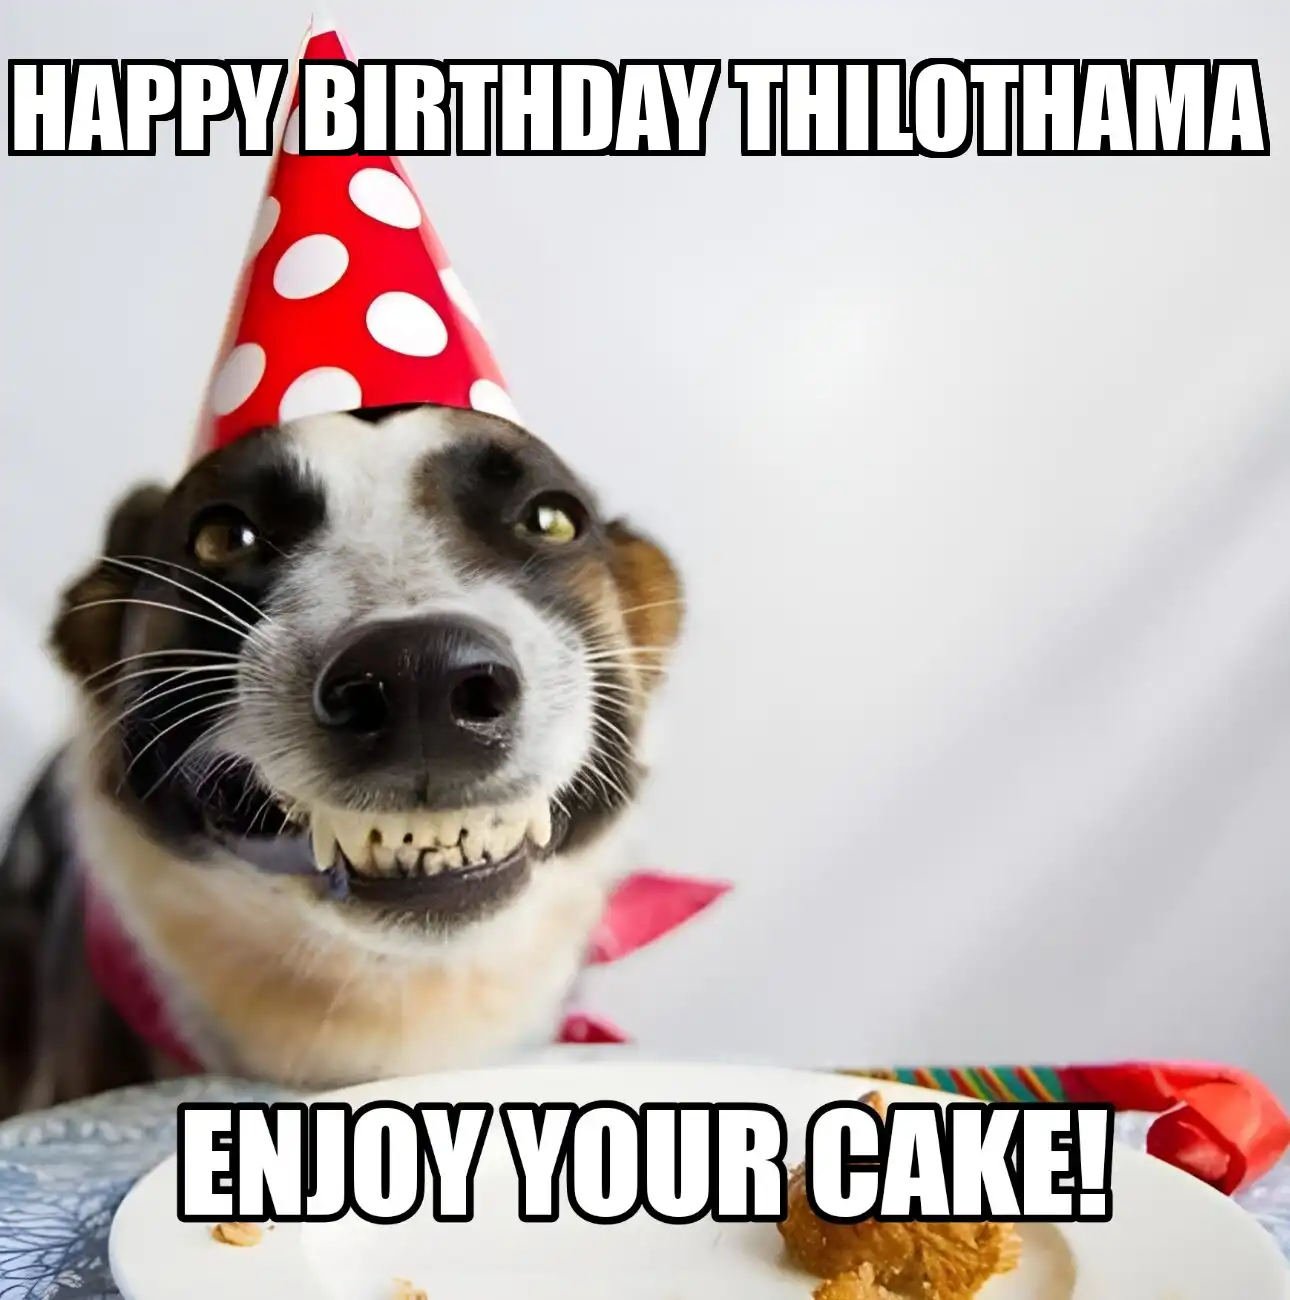 Happy Birthday Thilothama Enjoy Your Cake Dog Meme